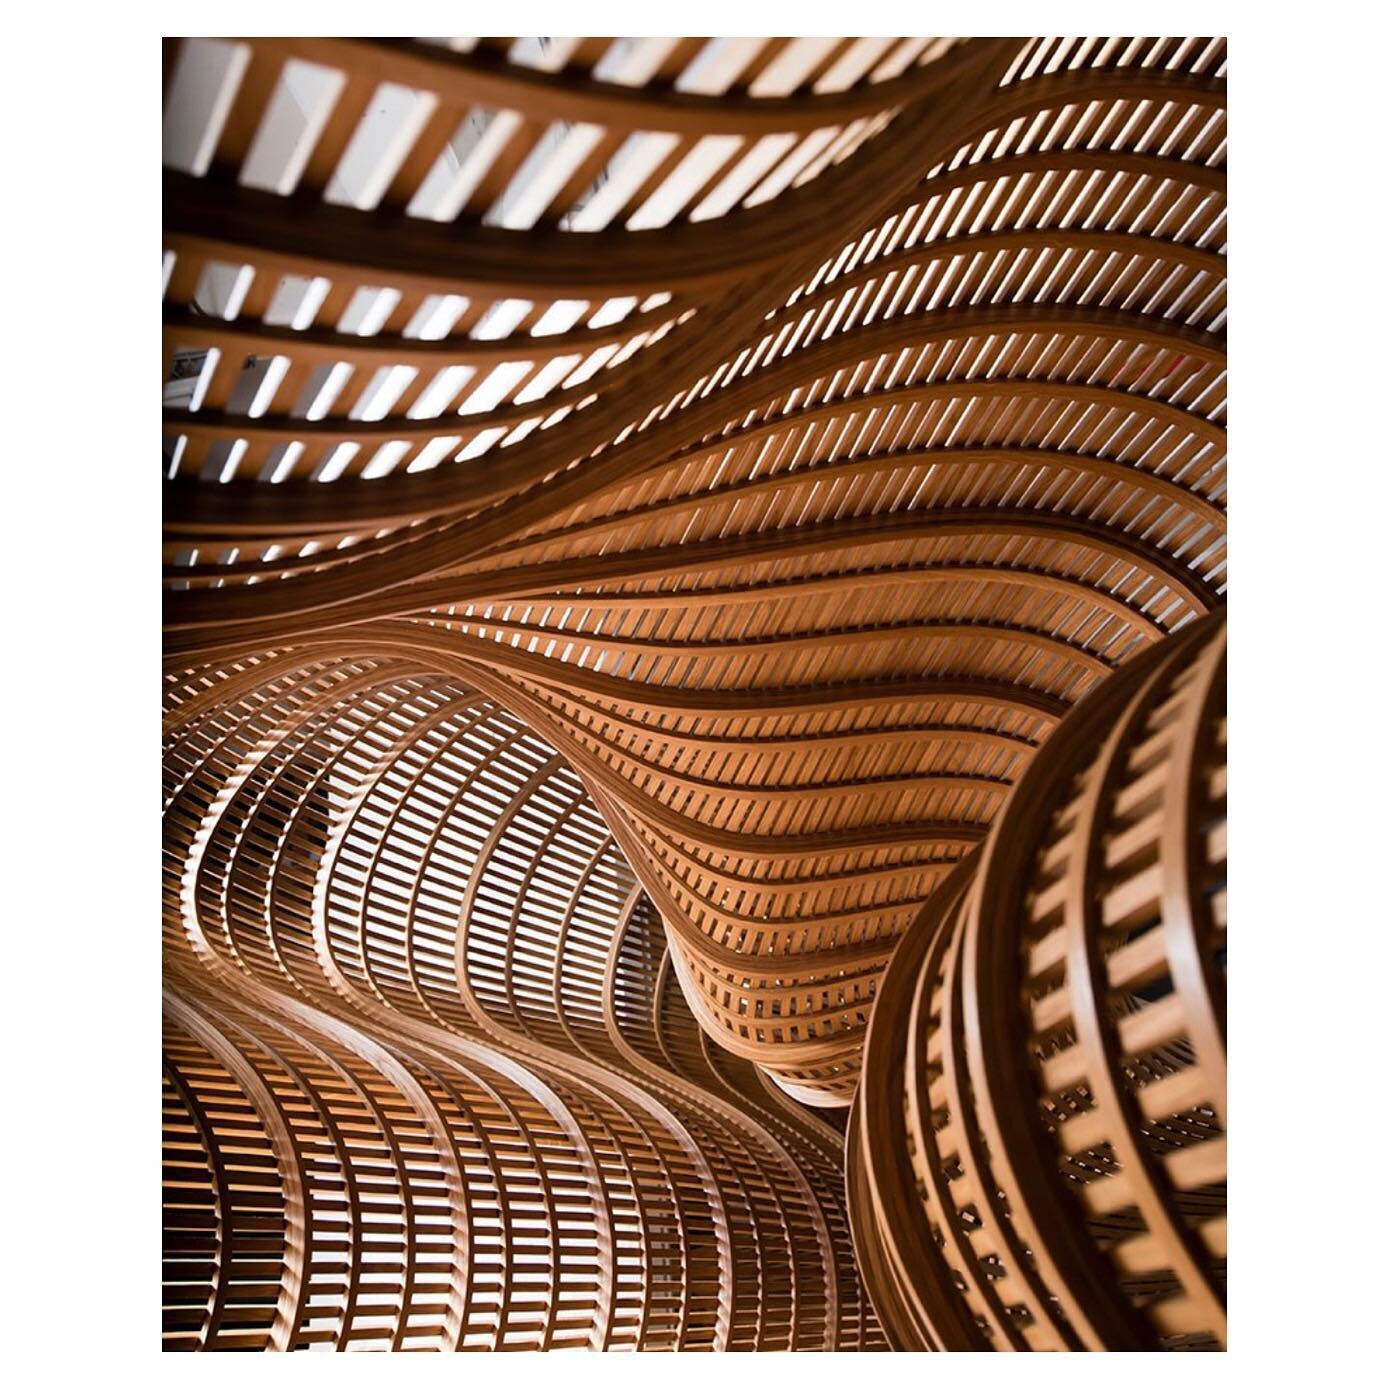 Een foto vanuit de binnenkant van een bank van Matthias Pliessnig, een bank gemaakt door het stomen en buigen van hout. 
.
.
.
.
.

#architecture #art #reliefsculpture #3dart #wallart #utrecht #handmade #handmadeart #wandpaneel #3dwallart #reliefpain